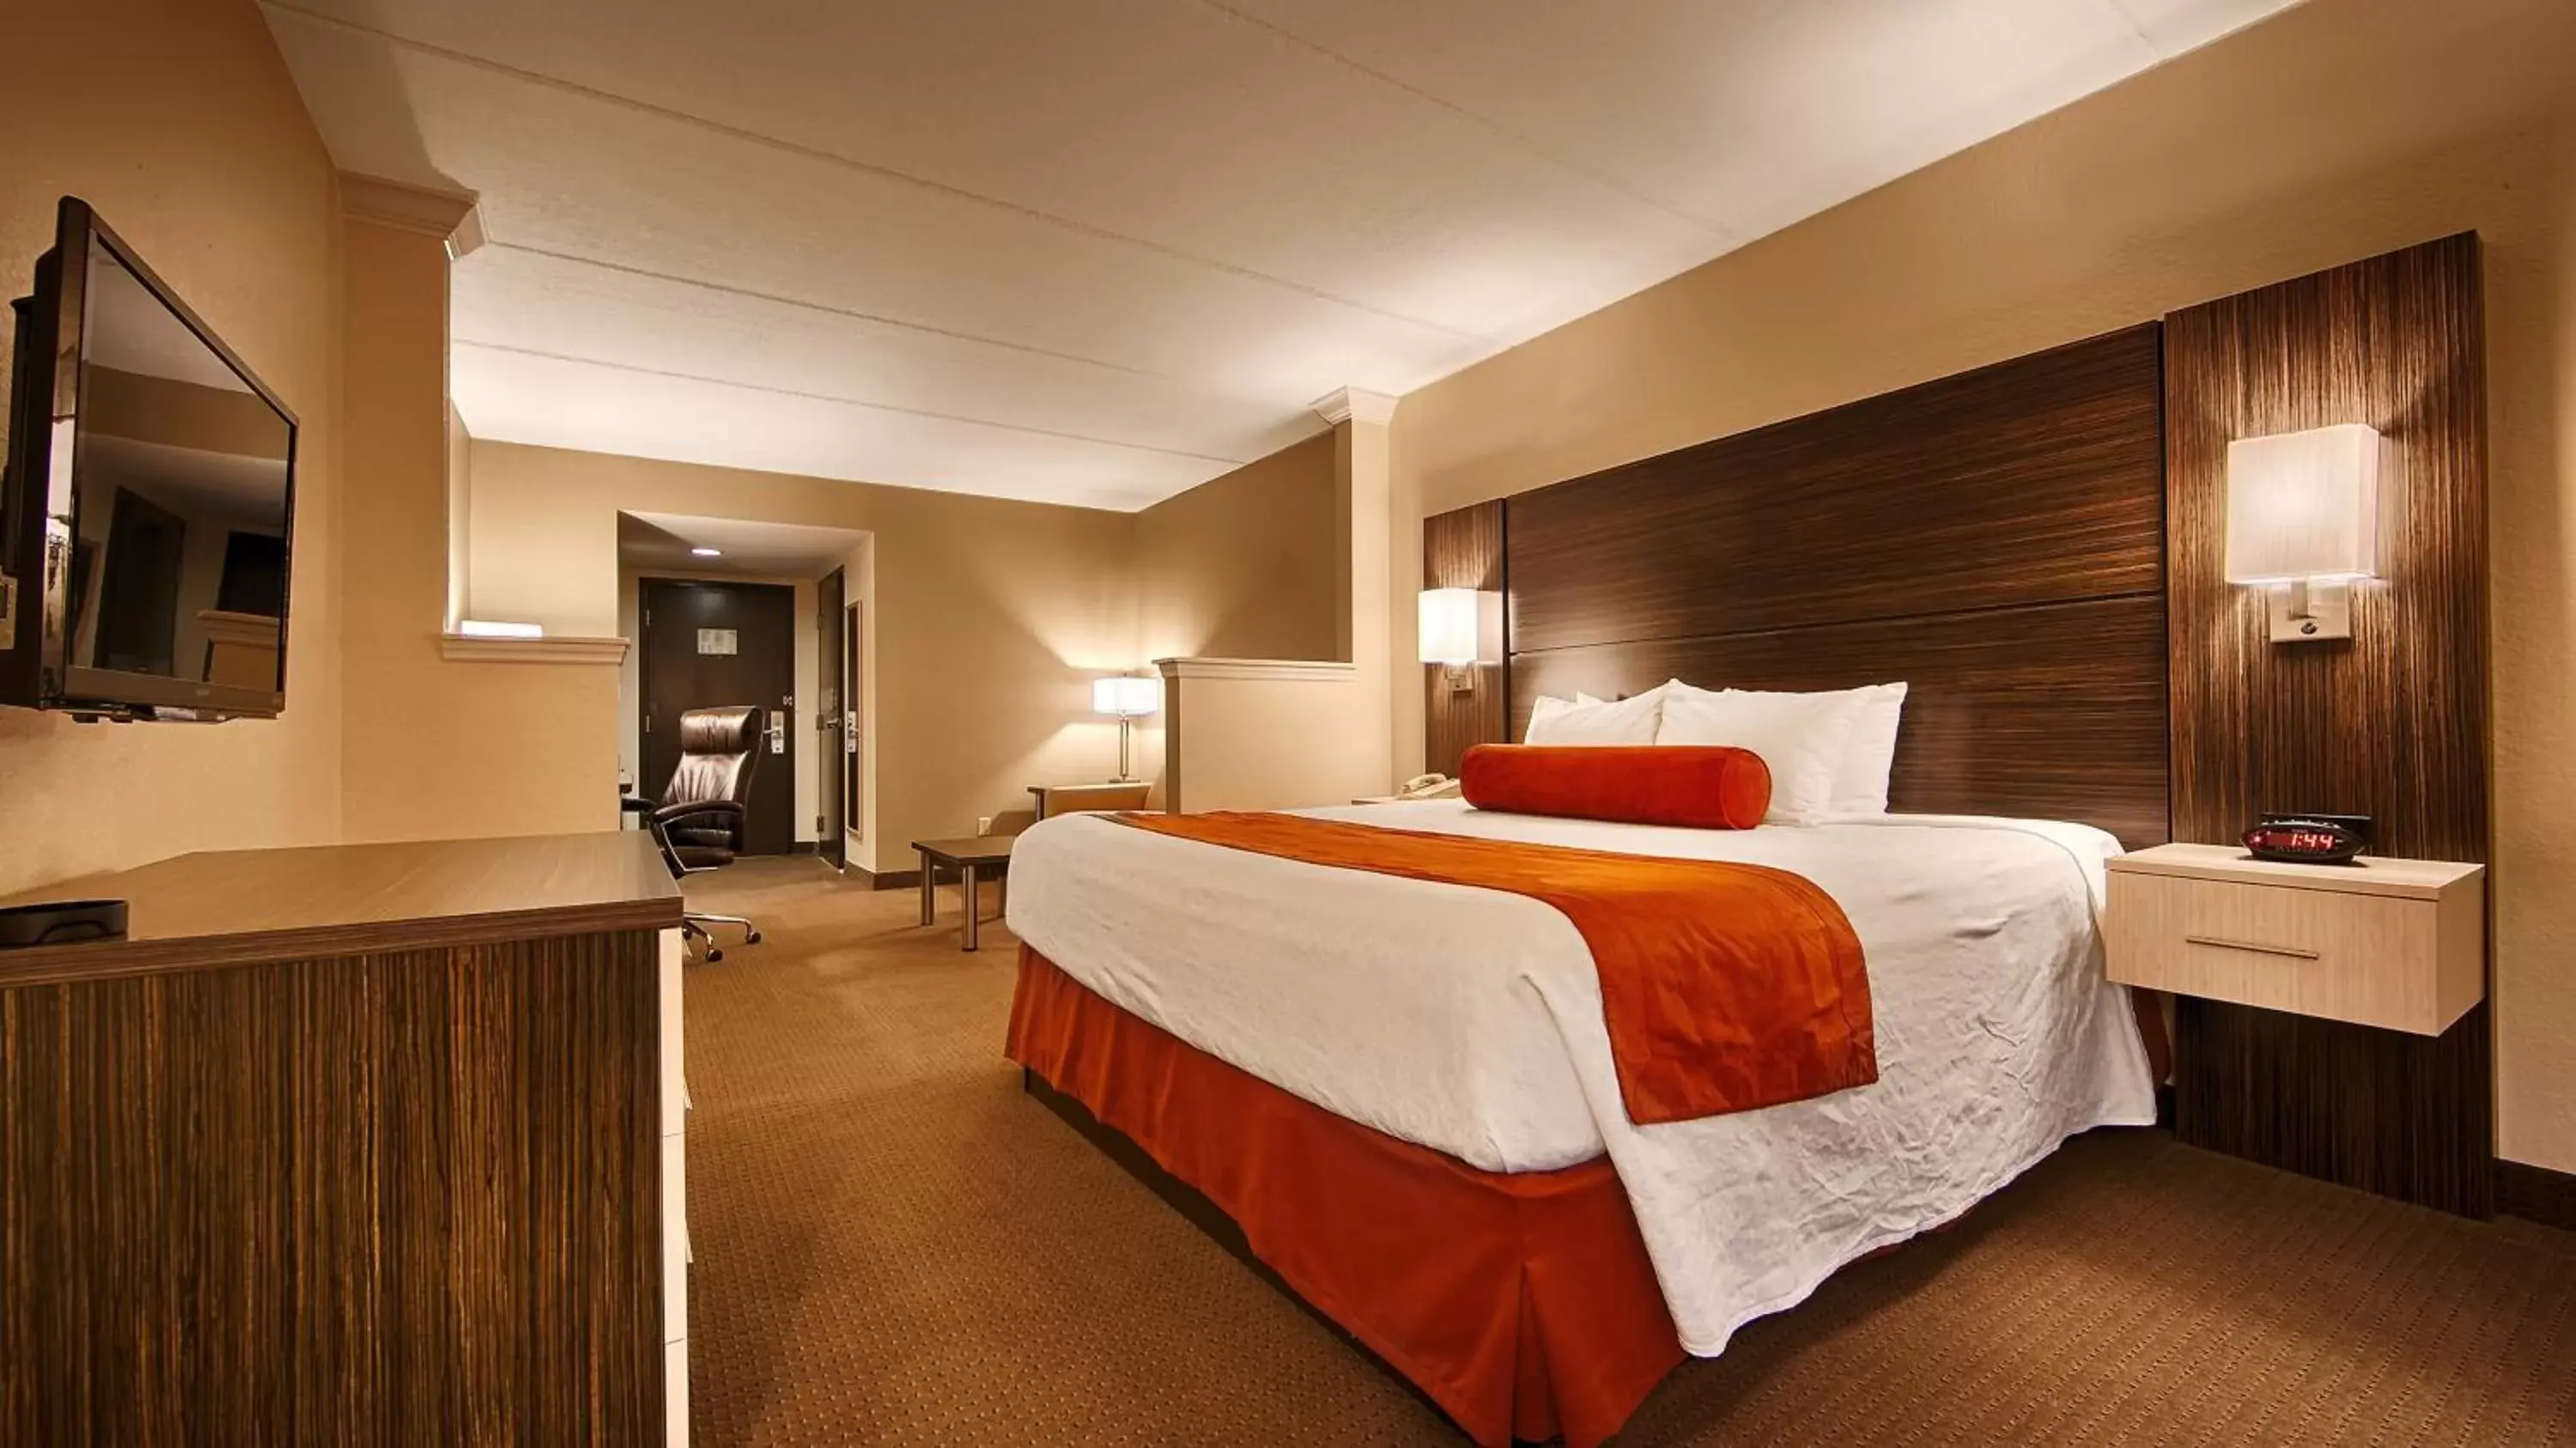 Bedroom, Bed in Best Western Airport Inn & Suites